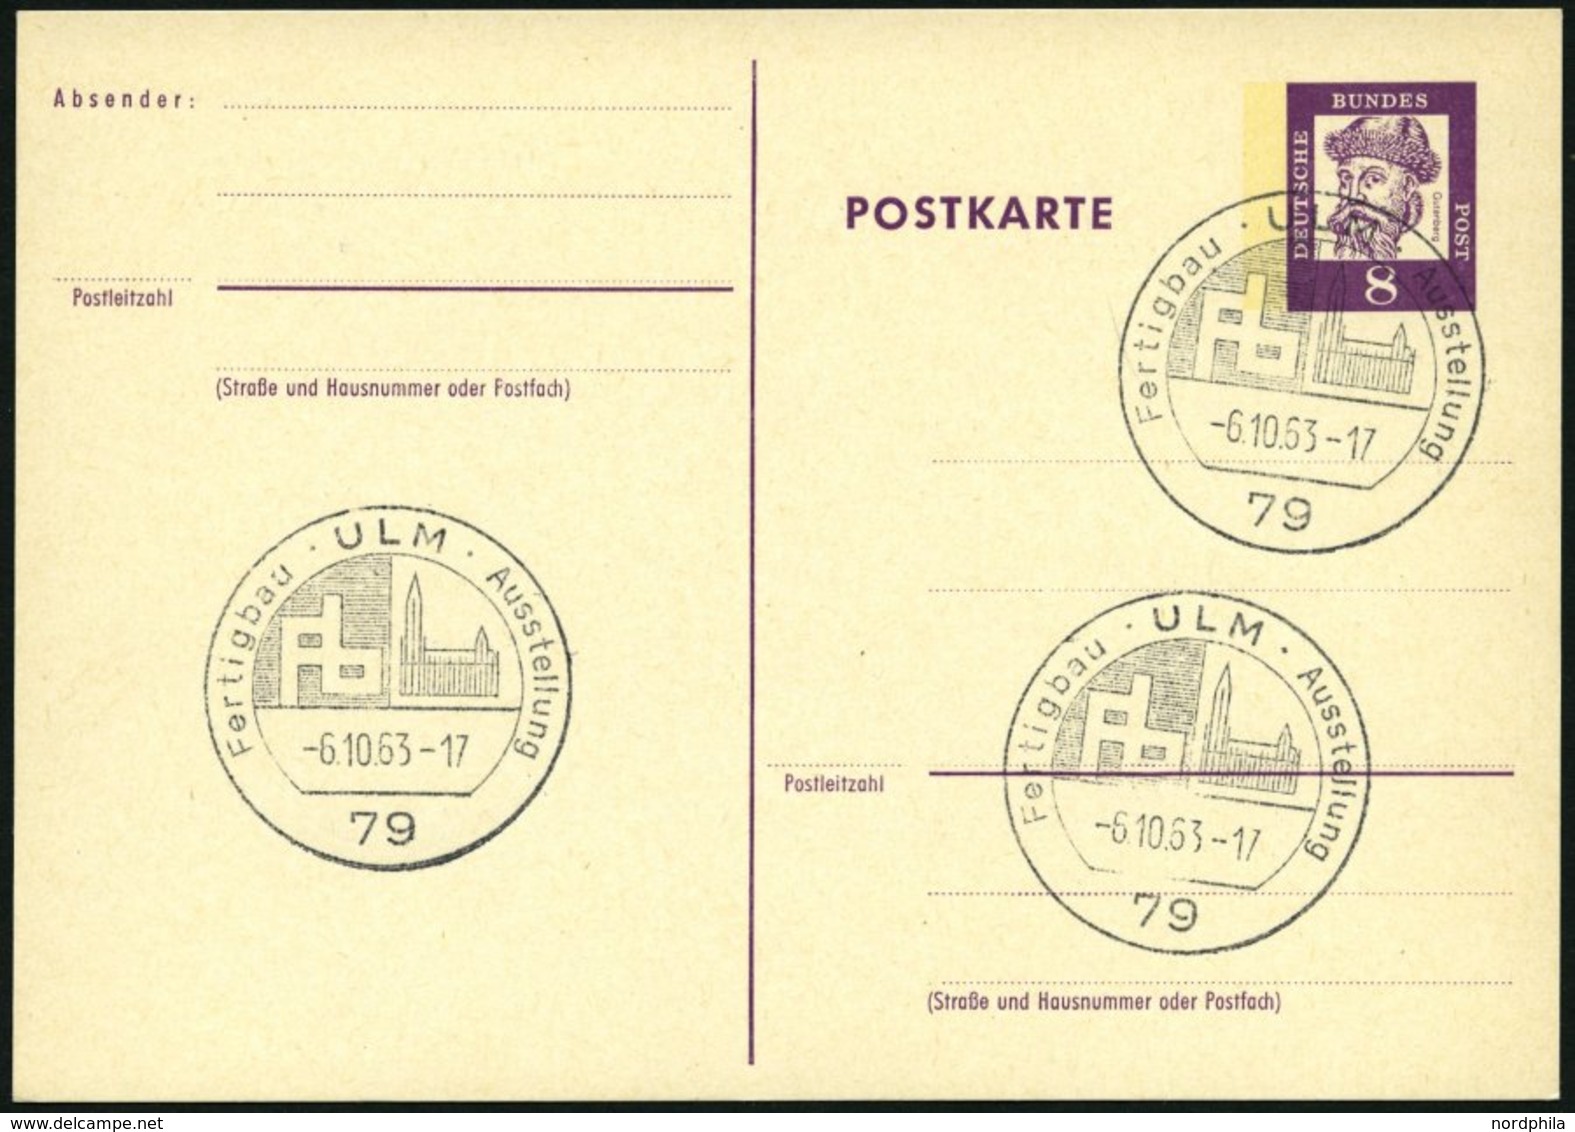 GANZSACHEN P 73 BRIEF, 1962, 8 Pf. Gutenberg, Postkarte In Grotesk-Schrift, Leer Gestempelt Mit Sonderstempel ULM FERTIG - Collections